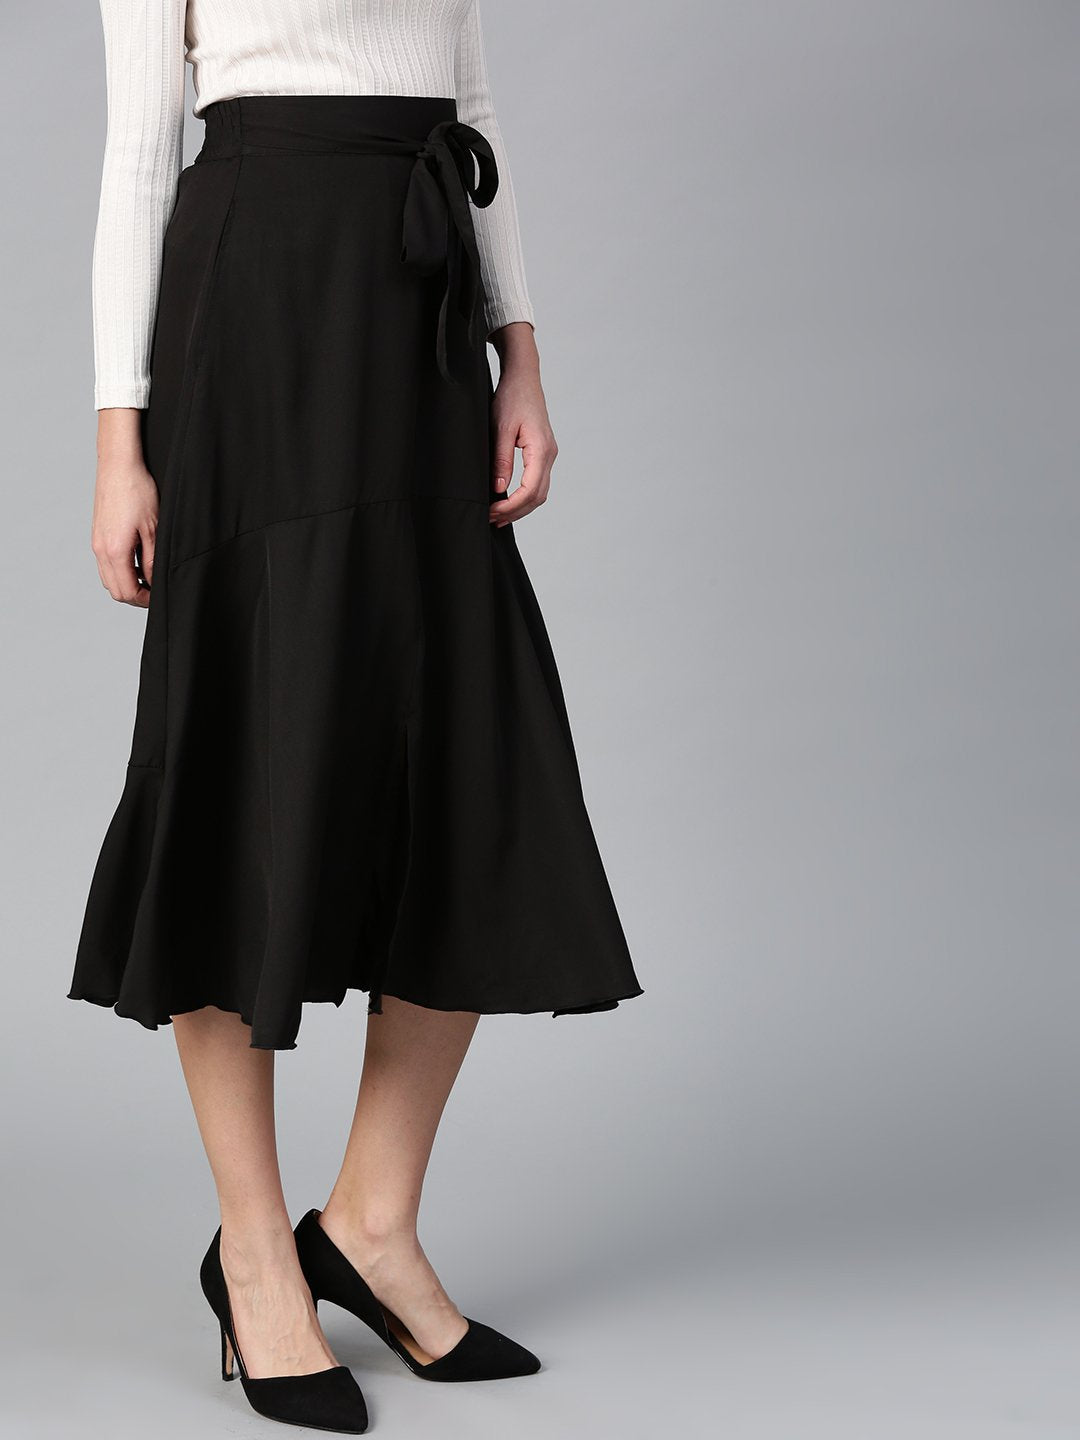 Black Crepe A Line With Front Slit Skirt (Sku- BLMG12815).